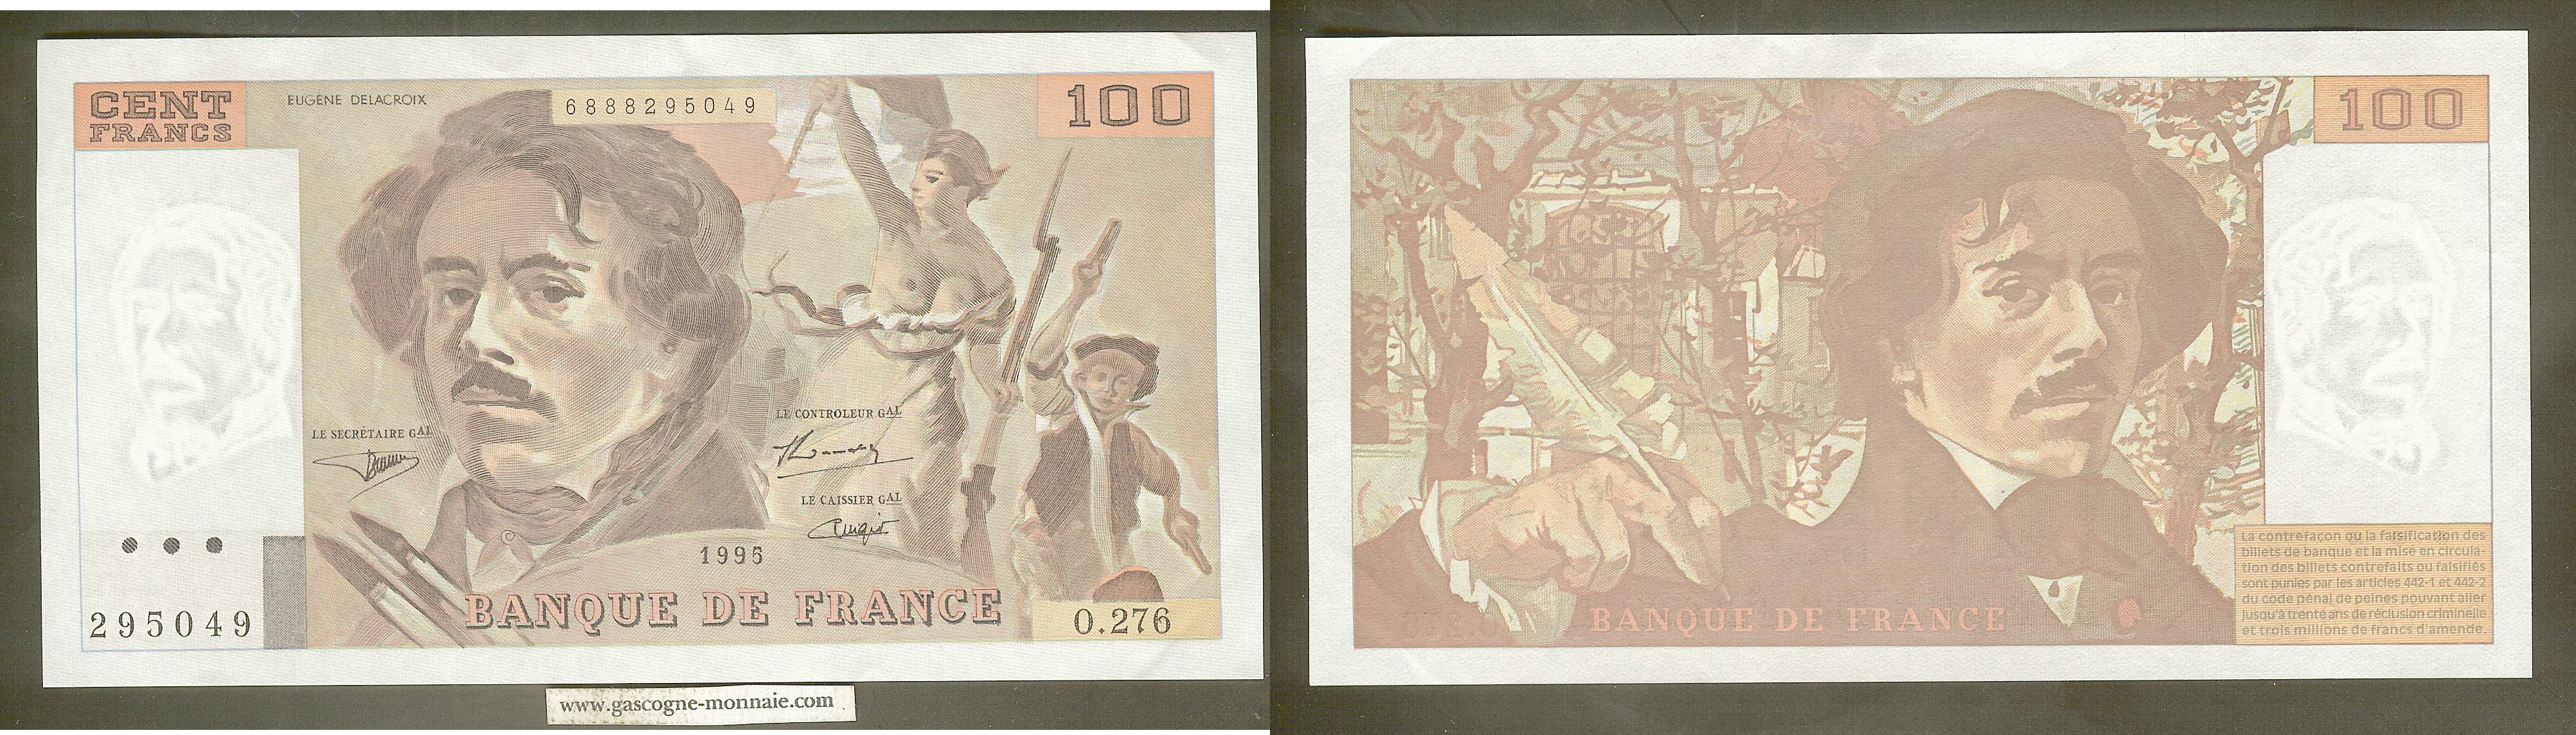 100 Francs Delacroix 1995  O.276  295049 SPL+